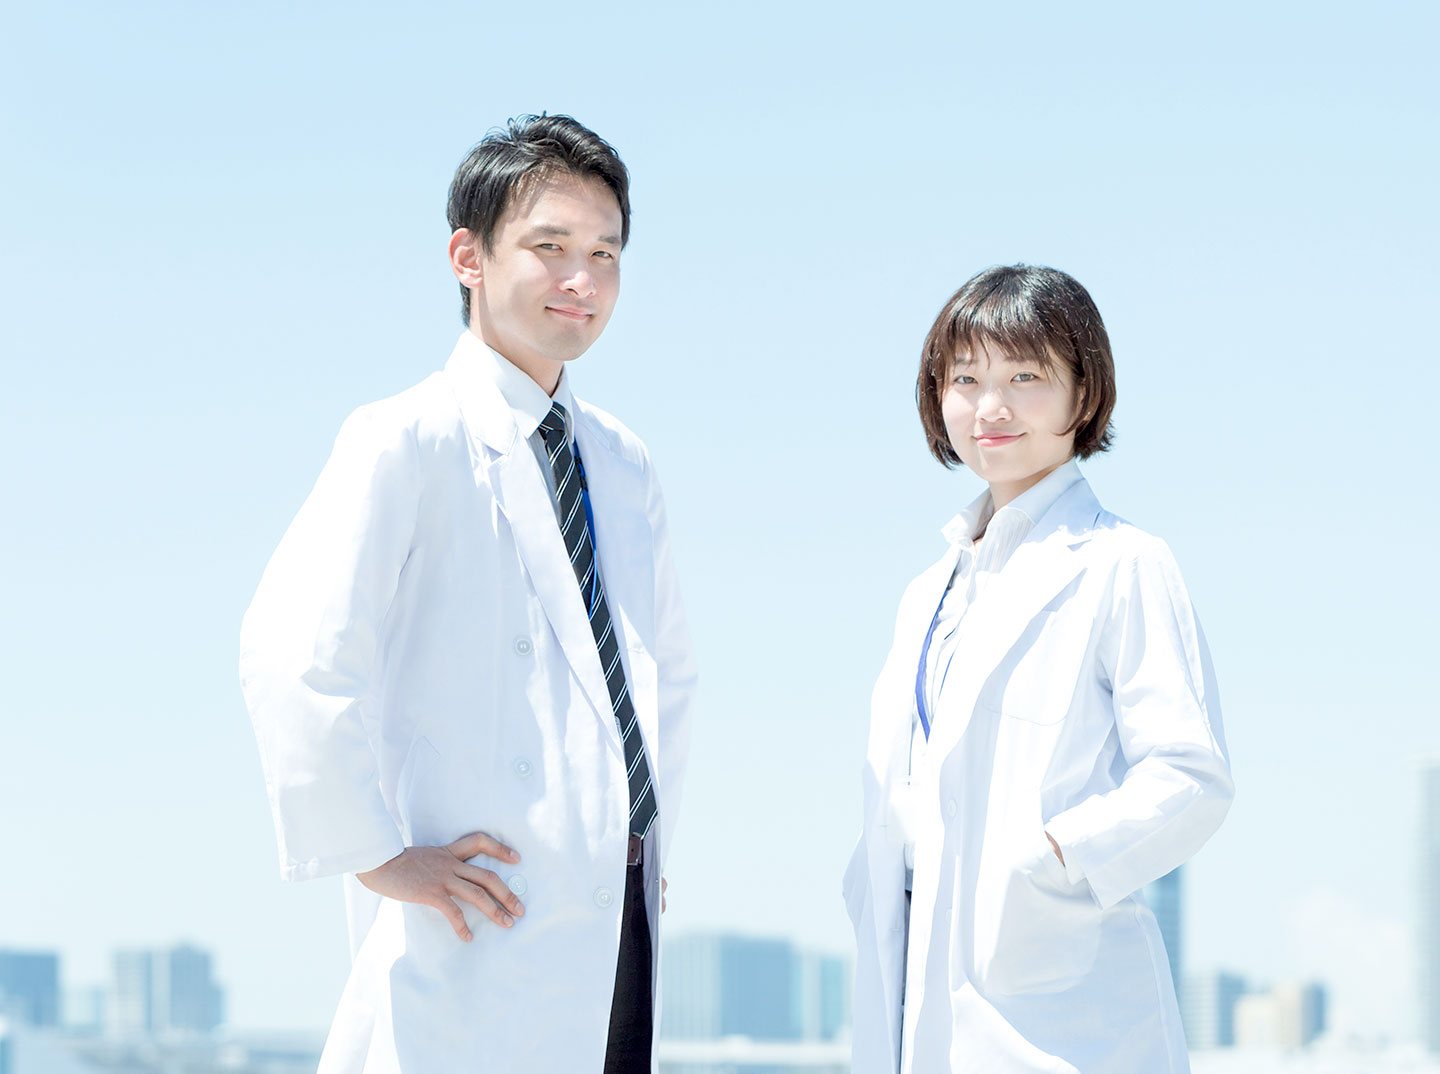 日本臨床矯正歯科医会の活動について